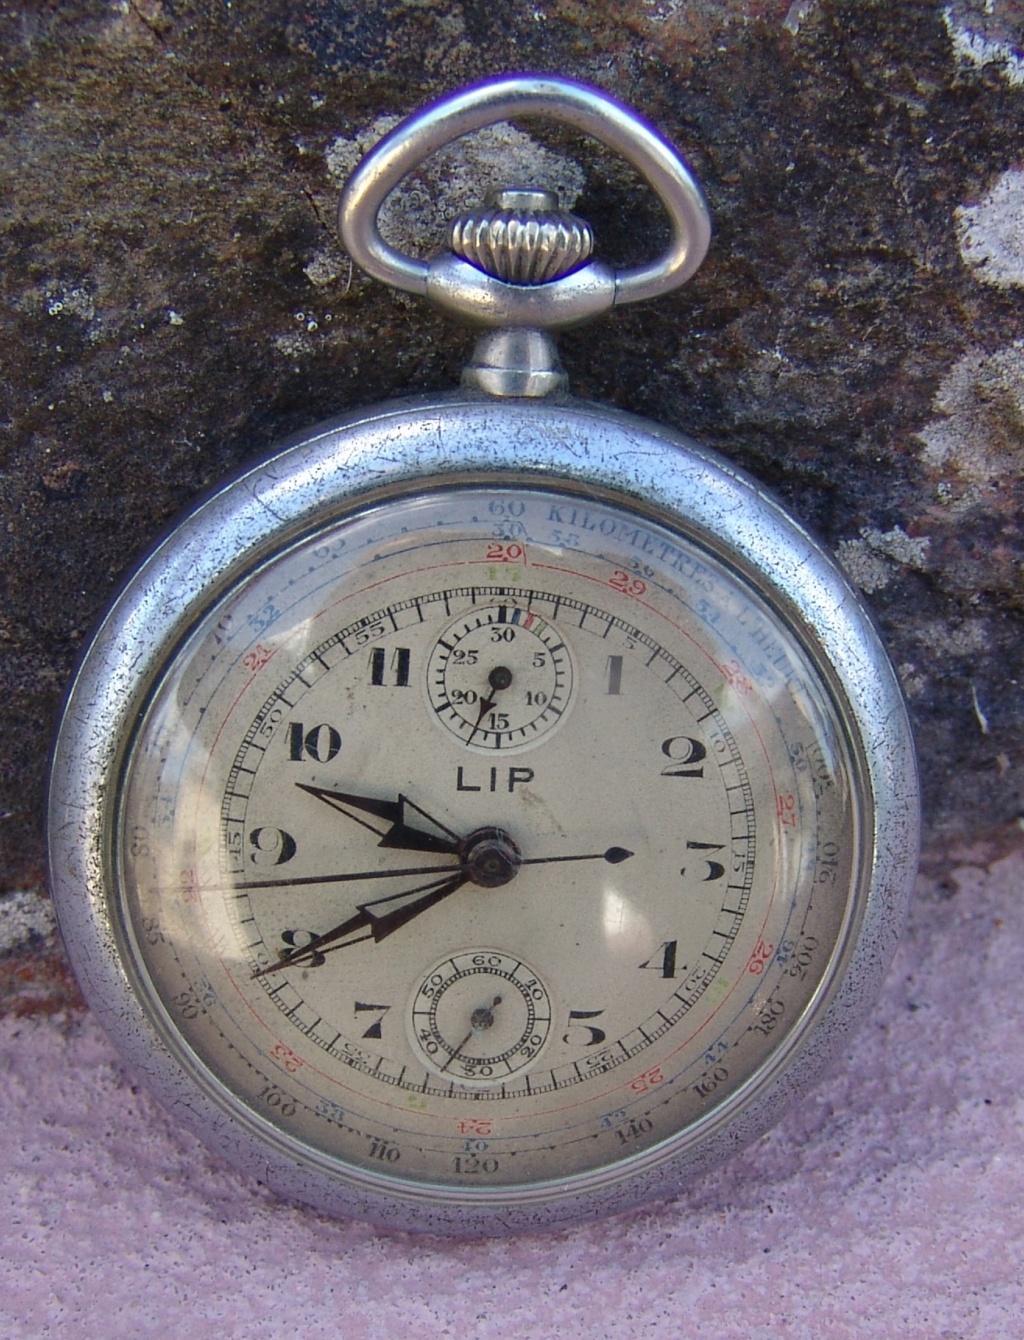 Chronométre tachymètre Lip, vers 1900/1920 + mise à l'heure Dsc08347